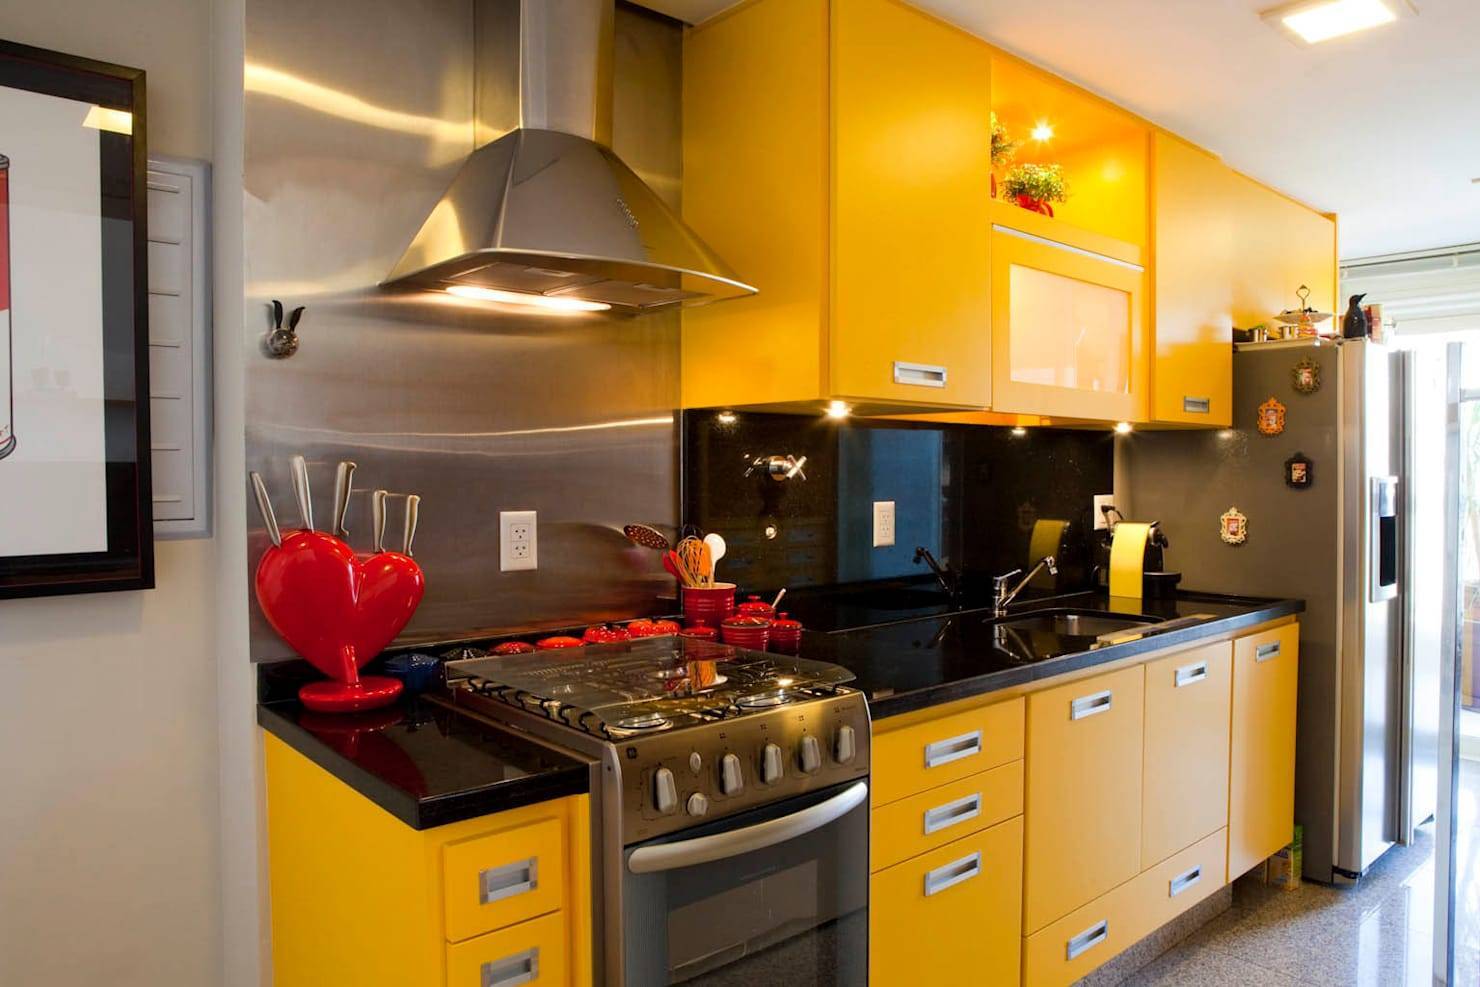 Дизайн кухни с газовой плитой - идеи оформления интерьера
дизайн кухни с газовой плитой - идеи оформления интерьера